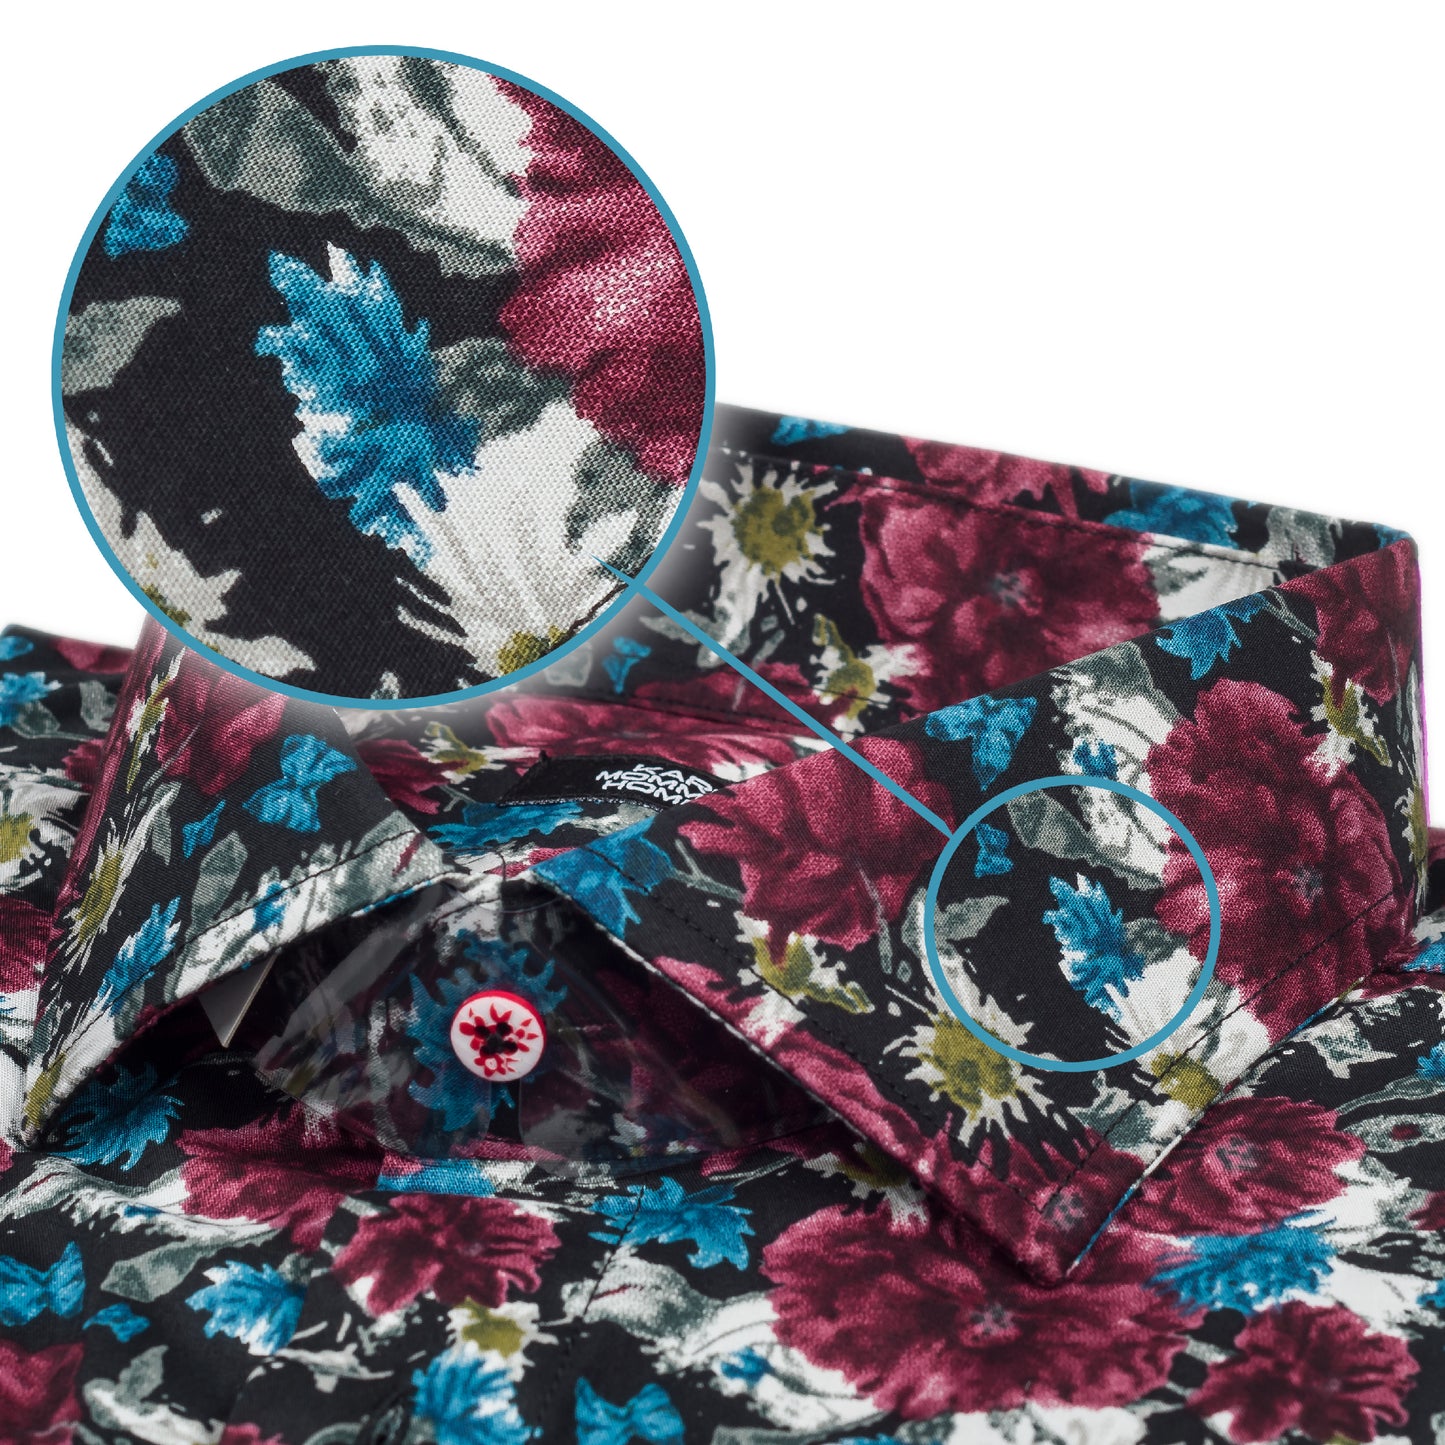 Karl Mommoo - Italienisches Herren-Hemd in floralem Print in blau/bordeaux, Baumwolle mit Elasthan, Modern Fit. Detailansicht